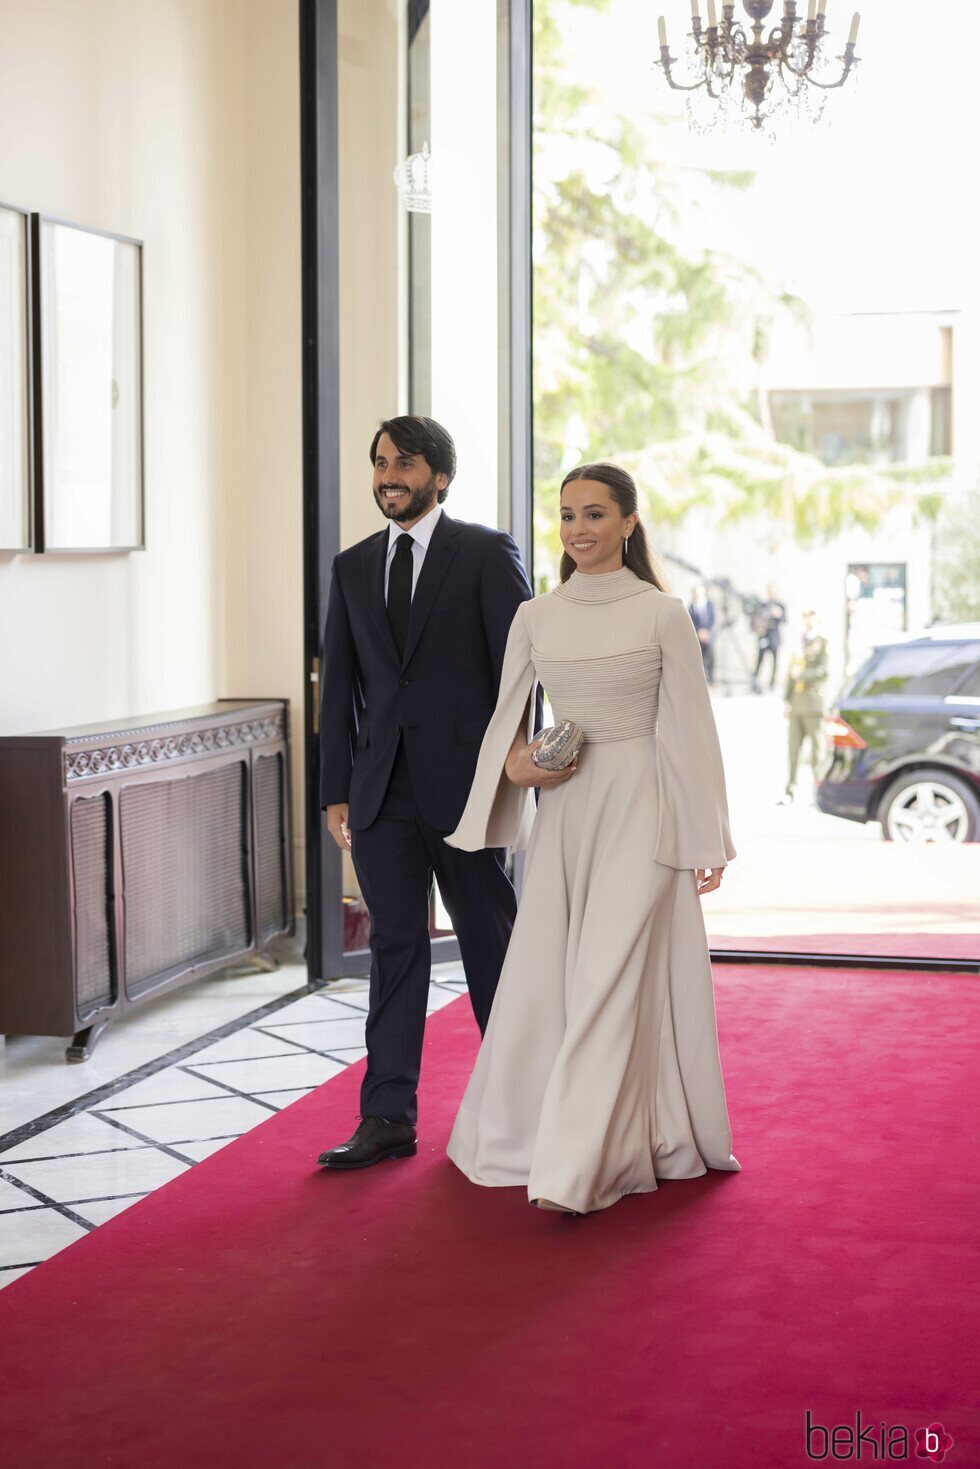 Iman de Jordania y Jameel Alexander Thermiotis a su llegada a la boda de Hussein y Rajwa de Jordania